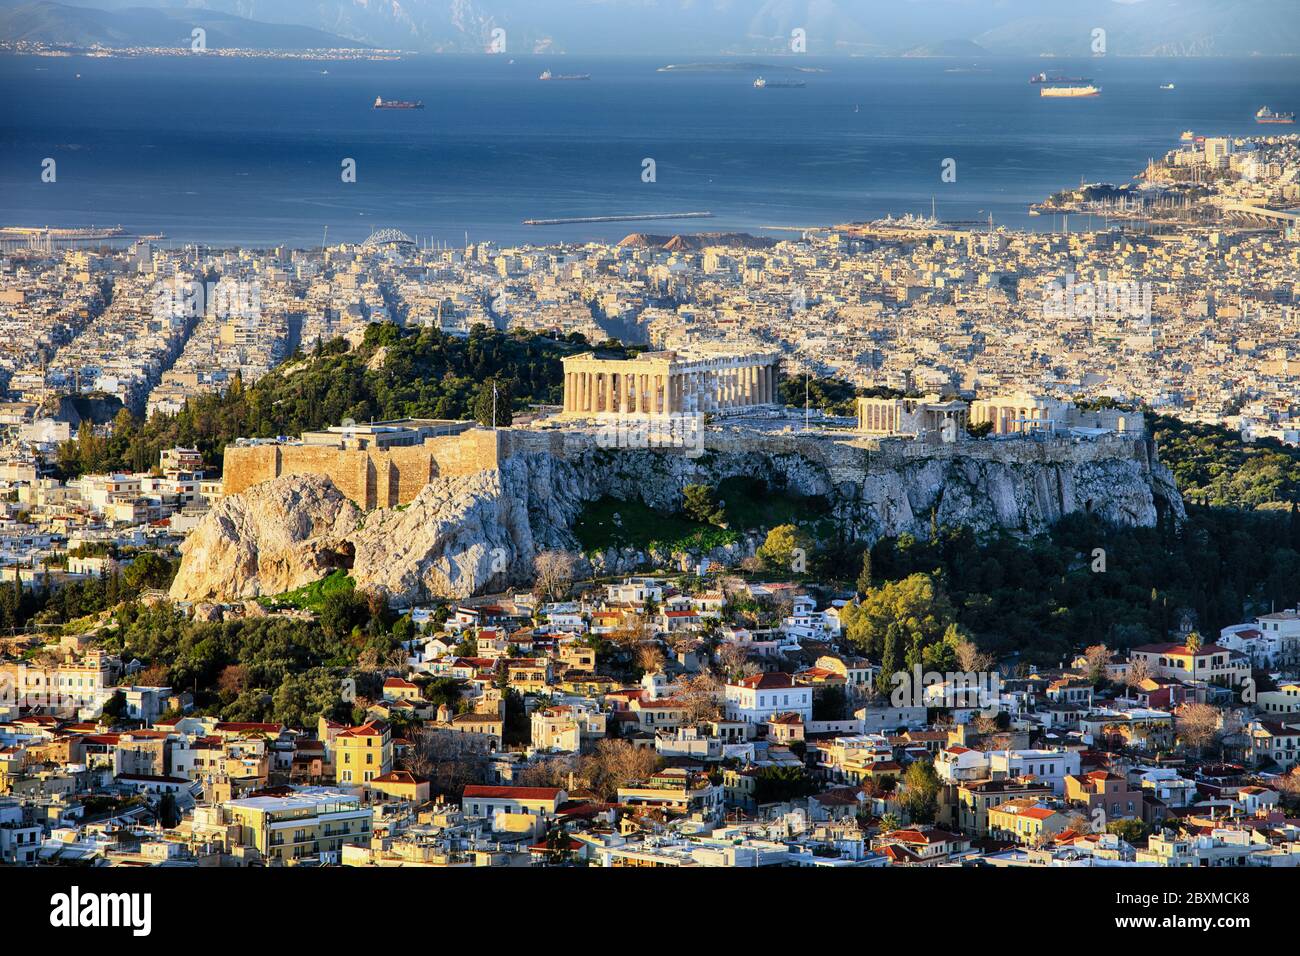 Ciudad y a la acrópolis de la colina de Lycabettus en Atenas, Grecia, al amanecer. Foto de stock